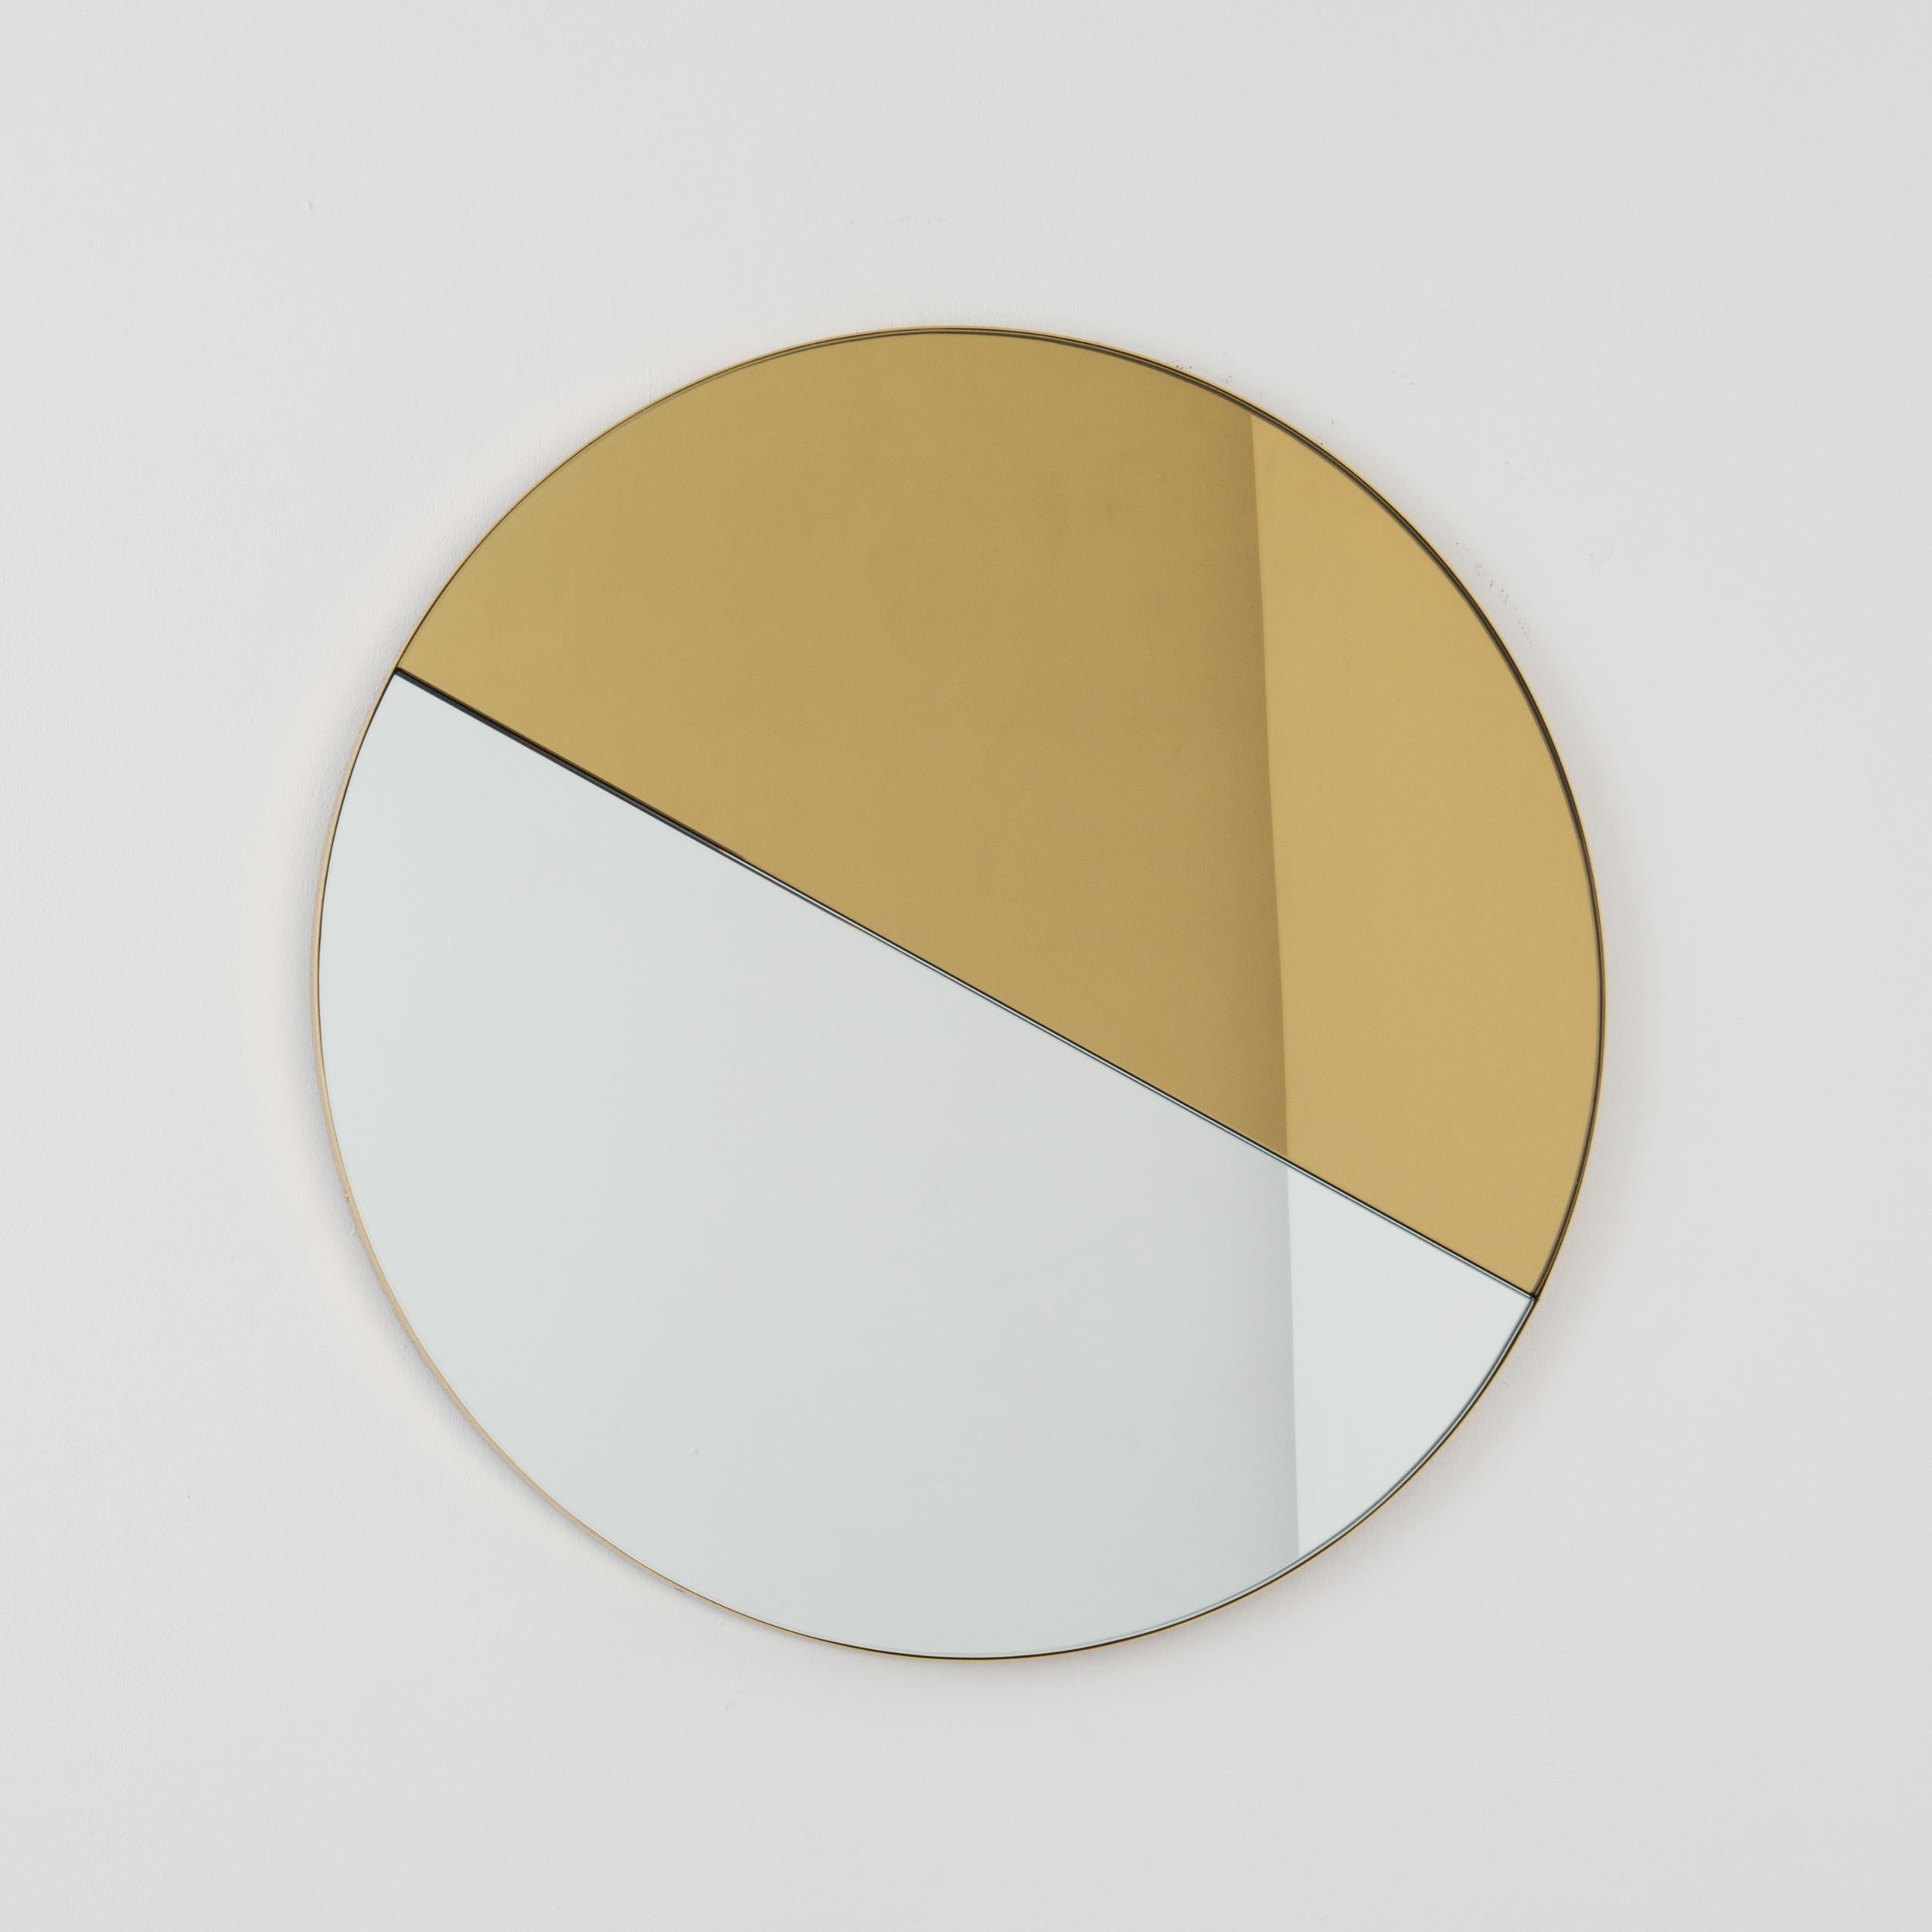 Ravissant miroir Orbis Dualis, fabriqué à la main et teinté d'or et d'argent, avec un élégant cadre en laiton massif brossé. Livré entièrement équipé d'un système d'accrochage spécialisé qui permet de suspendre le miroir dans quatre positions